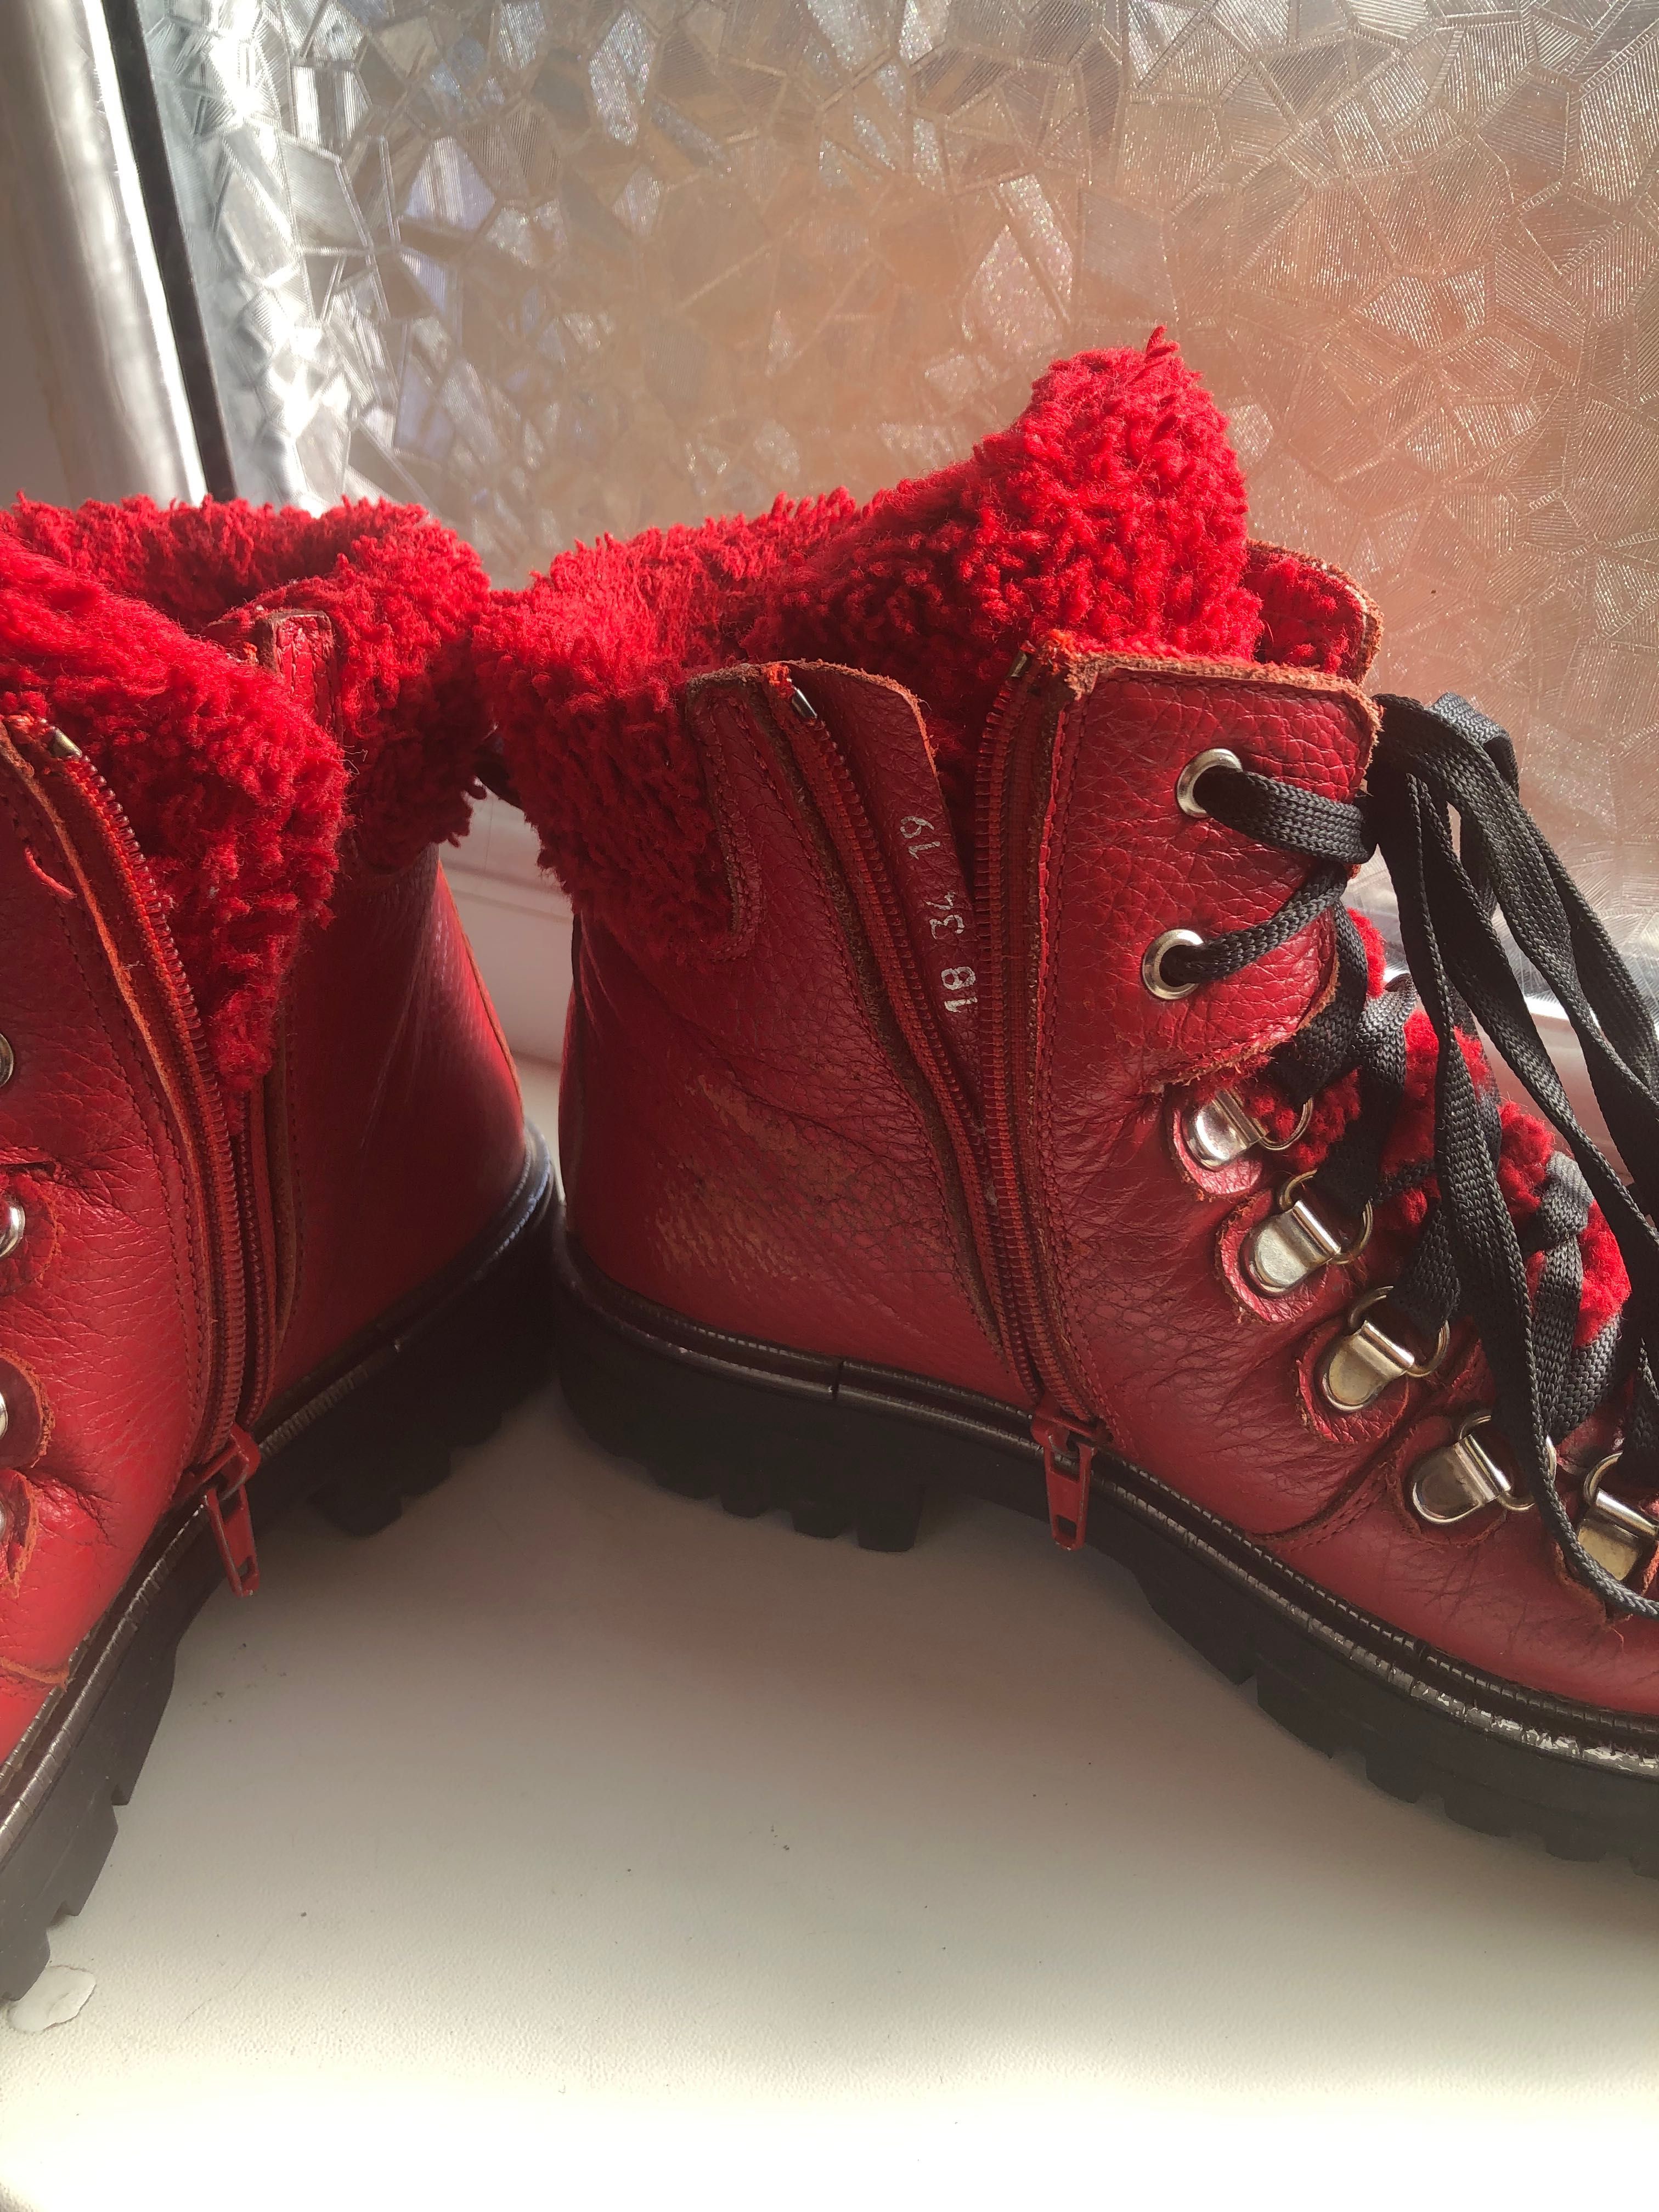 Ботинки - сапоги зимние на девочку красные